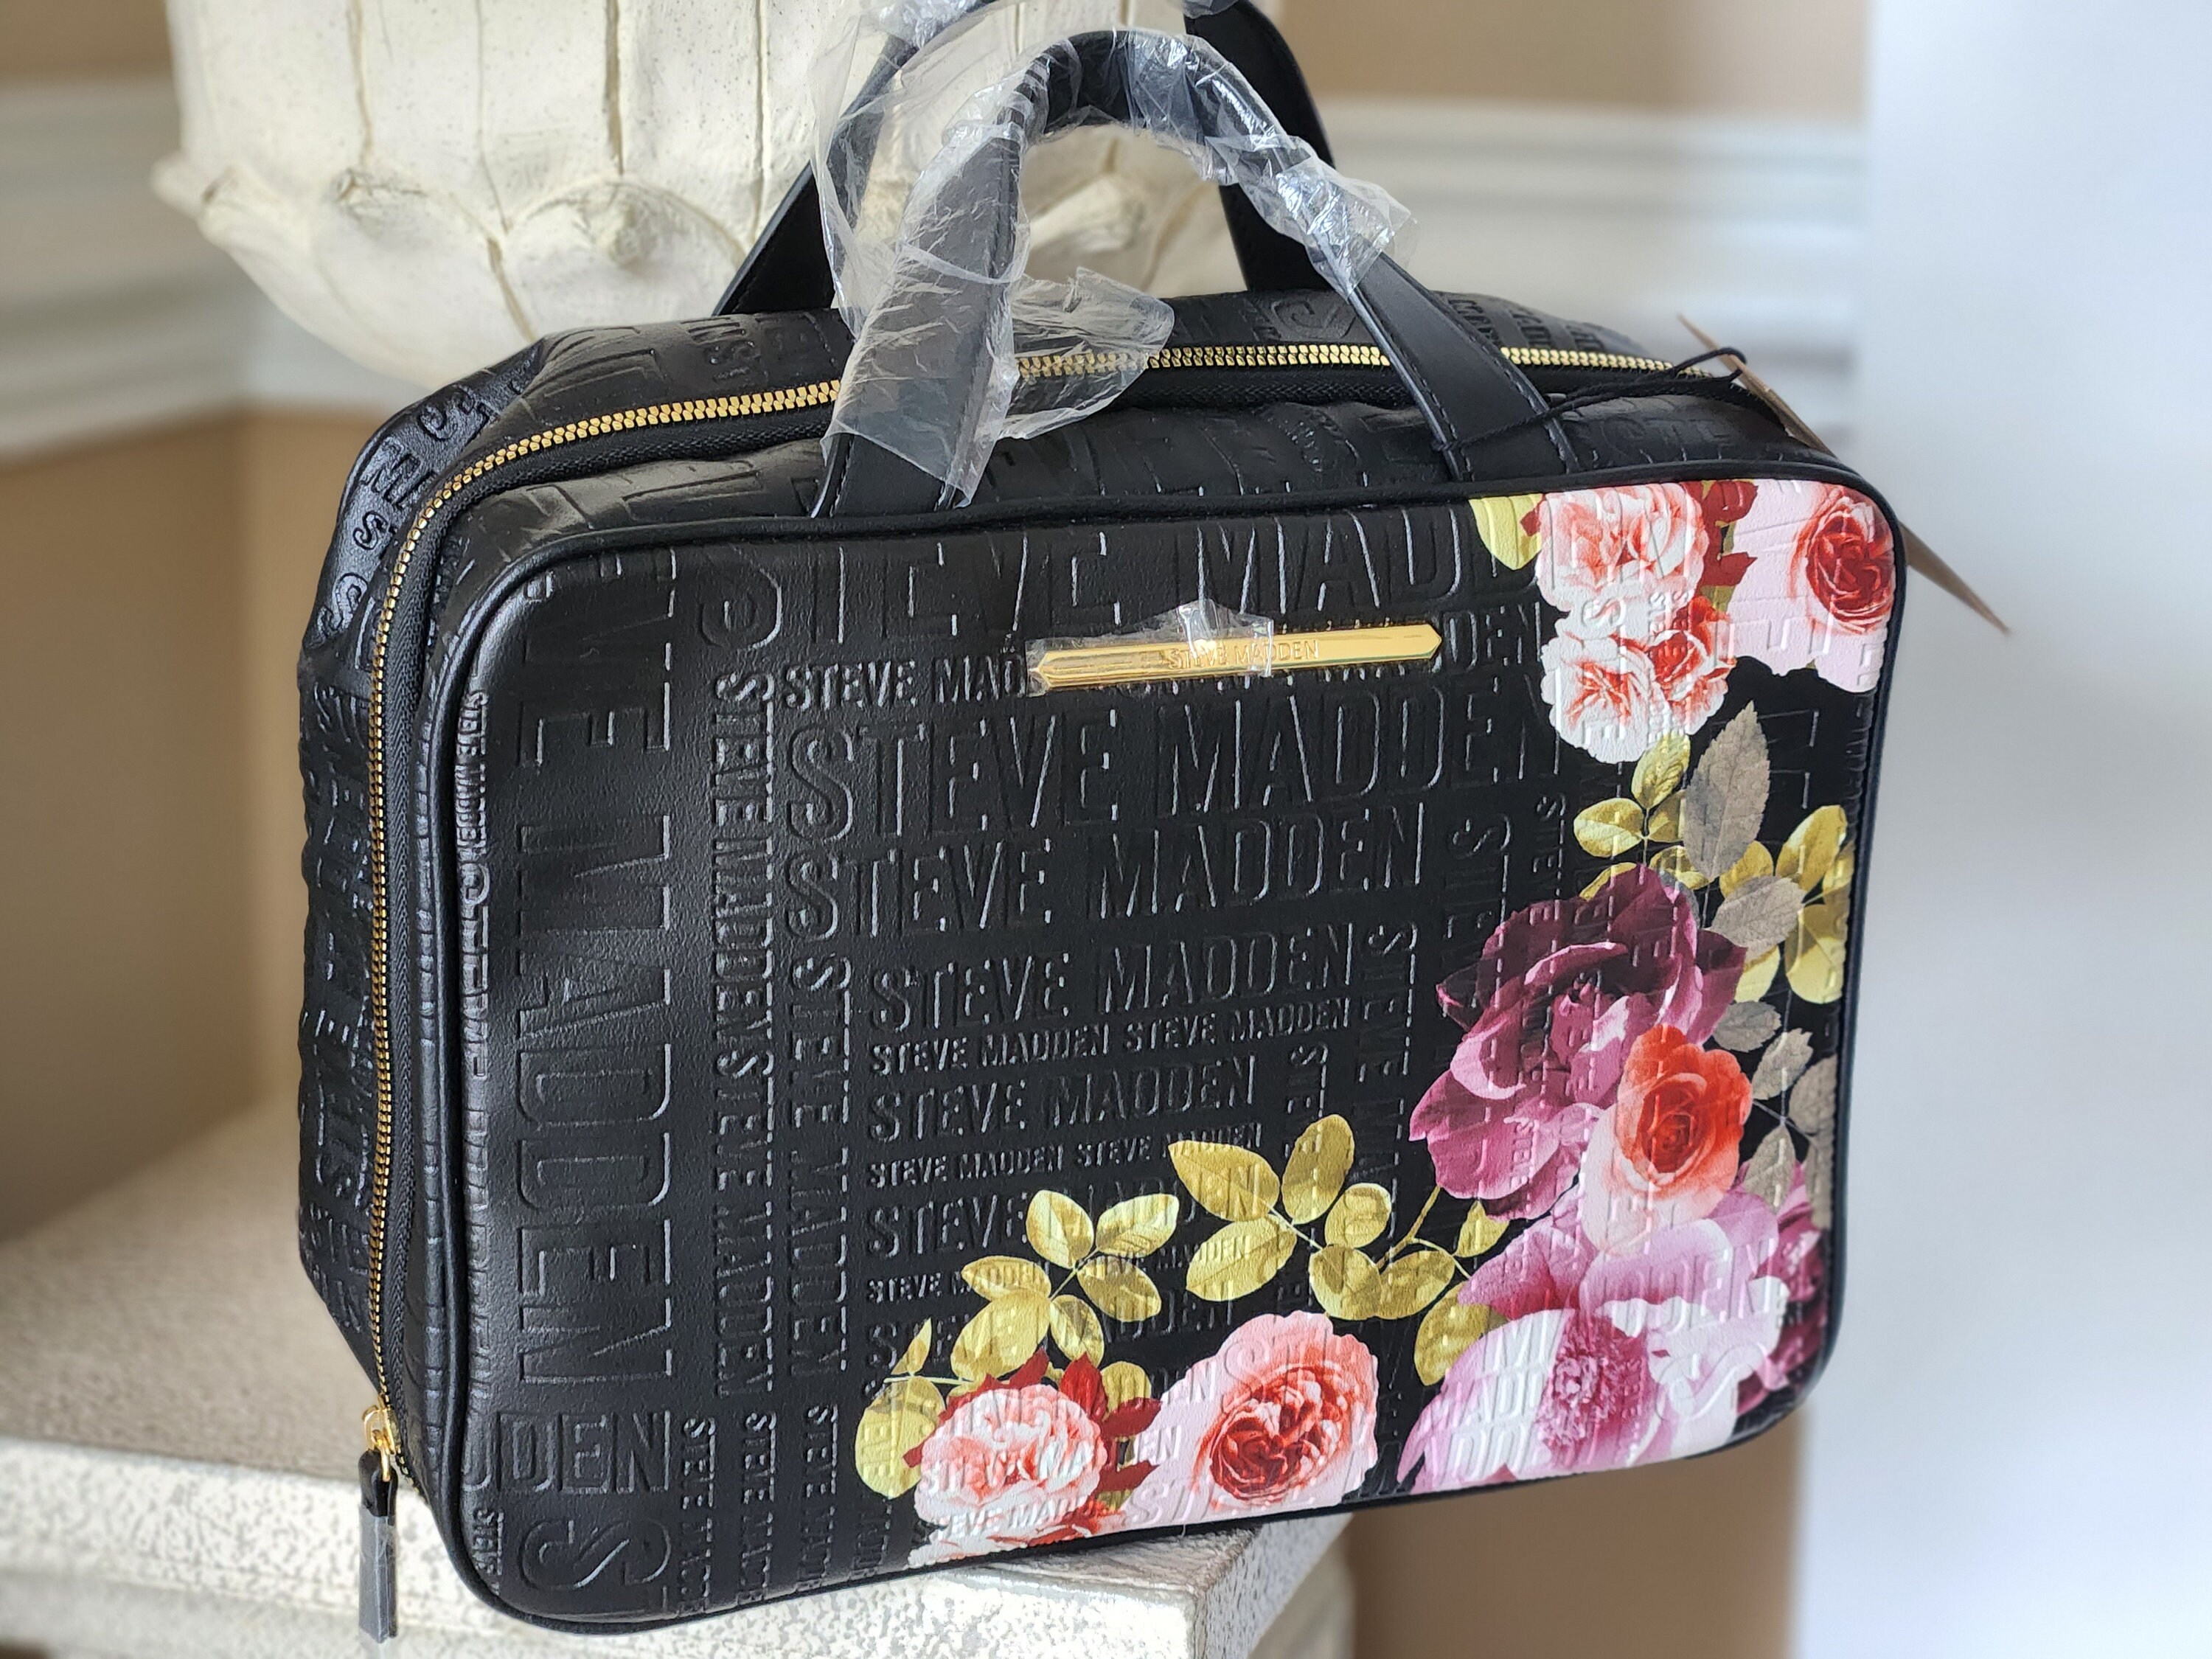 Steve Madden Travel Bag - Women's Handbags - Natick, Massachusetts, Facebook Marketplace